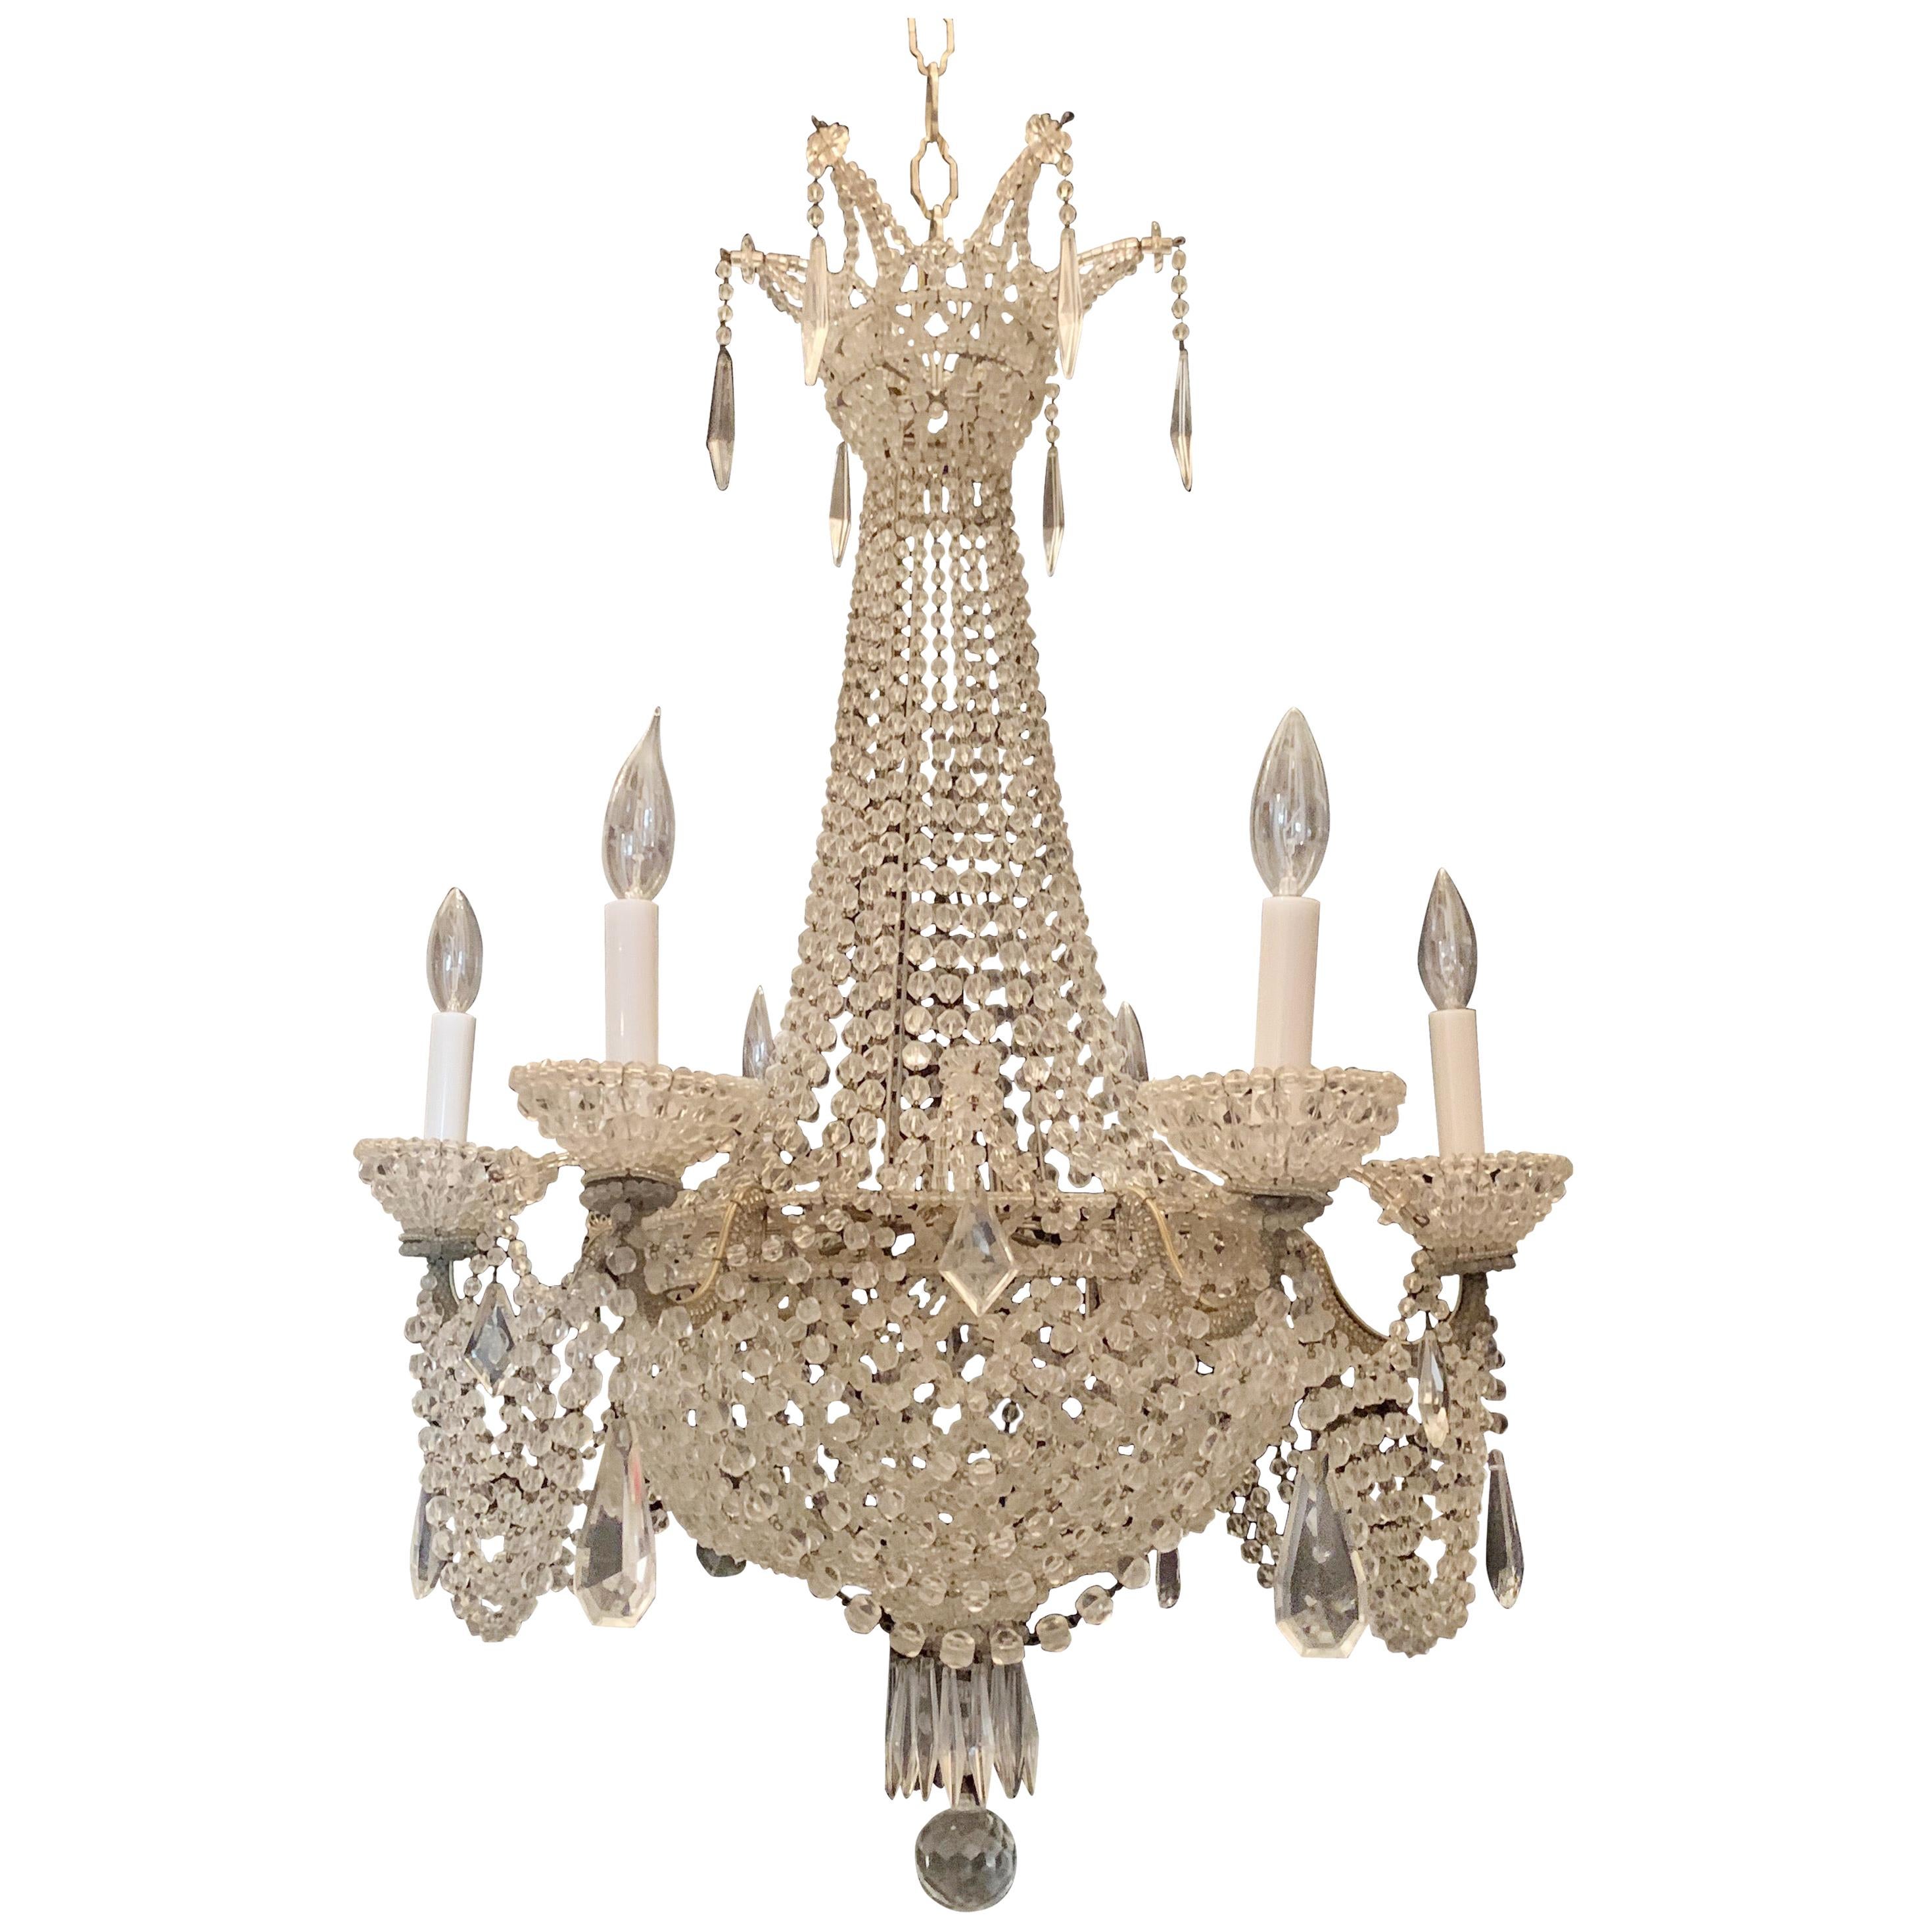 Großer kaskadenförmiger französischer Kronleuchter mit Perlen und Kristallkorb und Gitter, Swag